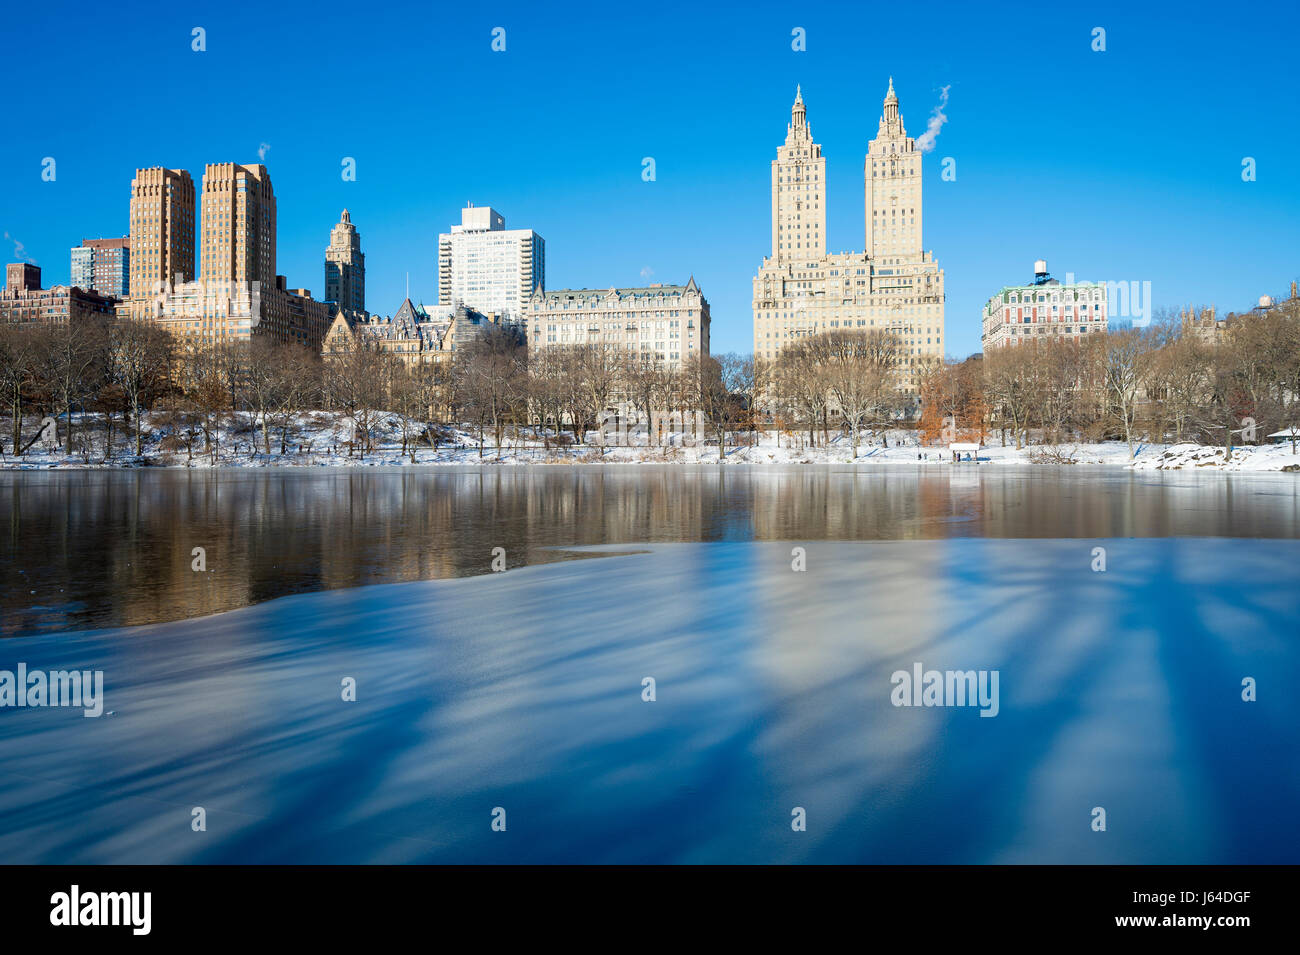 Vue panoramique de l'Upper West Side skyline se reflétant dans la glace du lac de Central Park le matin après une tempête de neige Banque D'Images